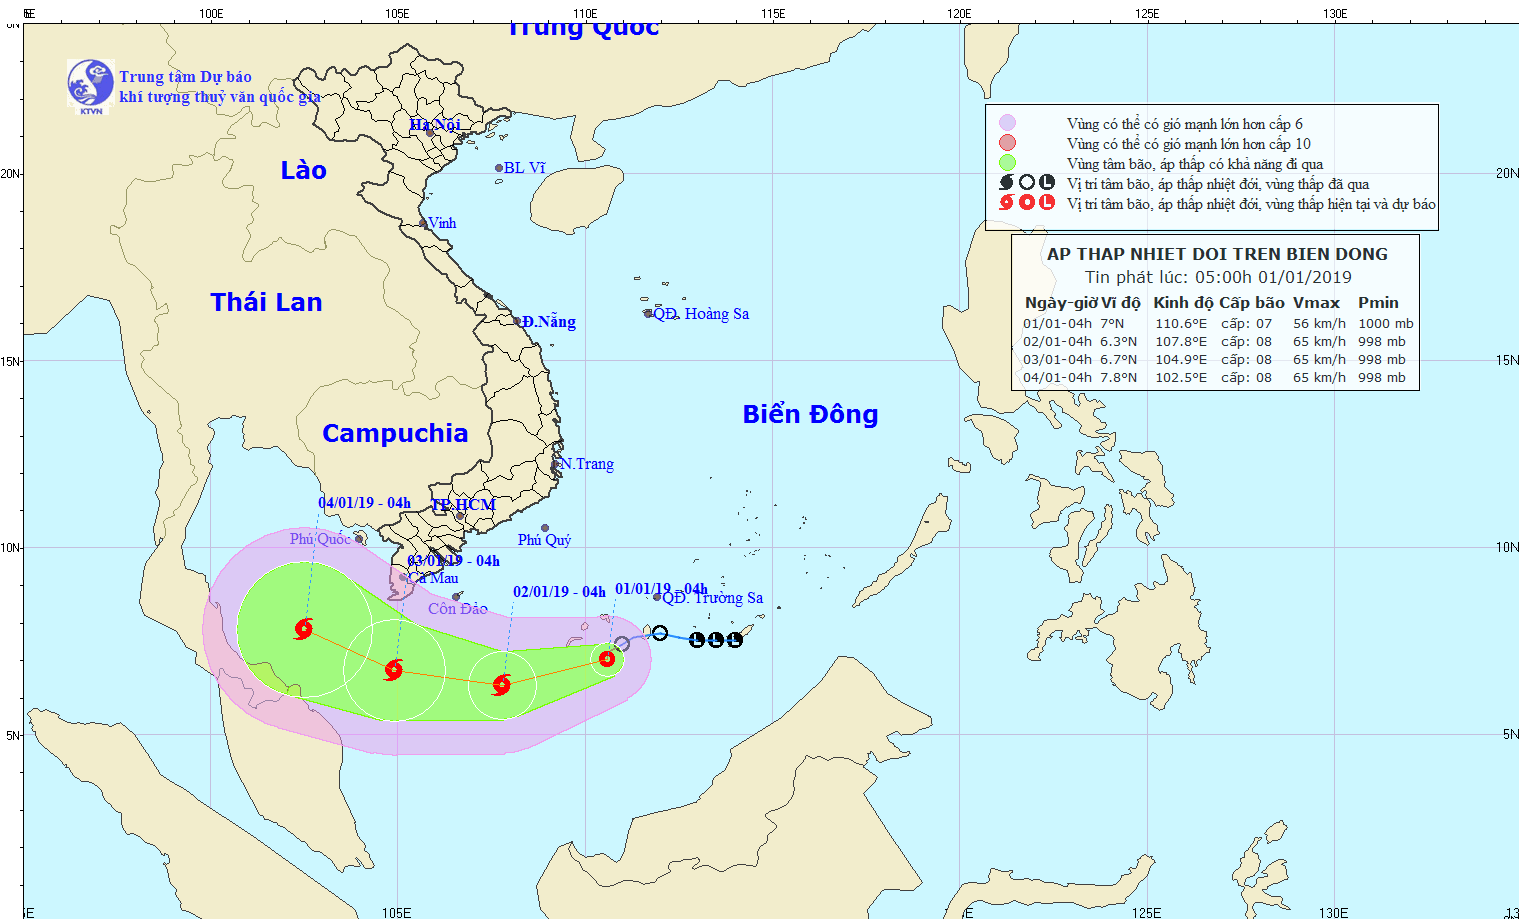 Khẩn: Bão số 1 mạnh cấp 8-10 cách đất liền Nam Bộ 500km